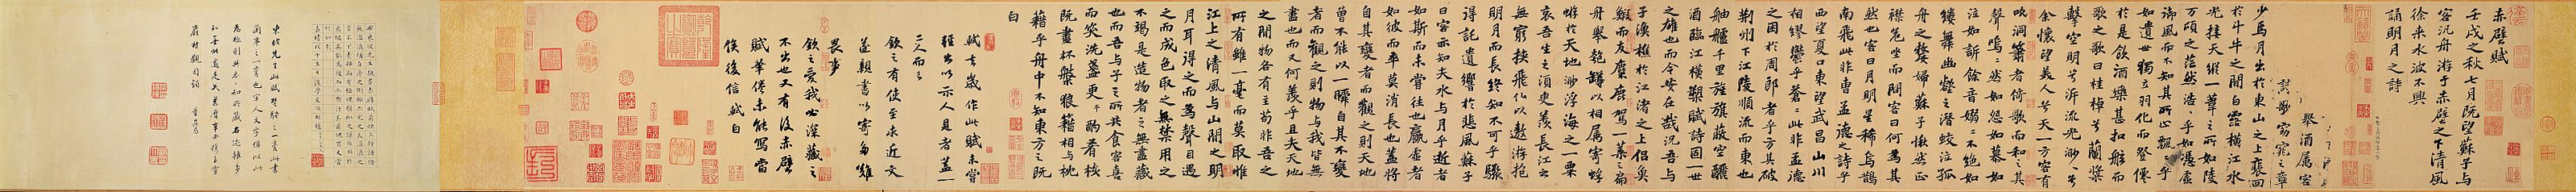 Tiền Xích Bích Phú, bài thơ nổi tiếng của Tô Đông Pha thời nhà Tống-Bảo tàng Cố cung, Đài Loan khổ 23.9 × 258 cm